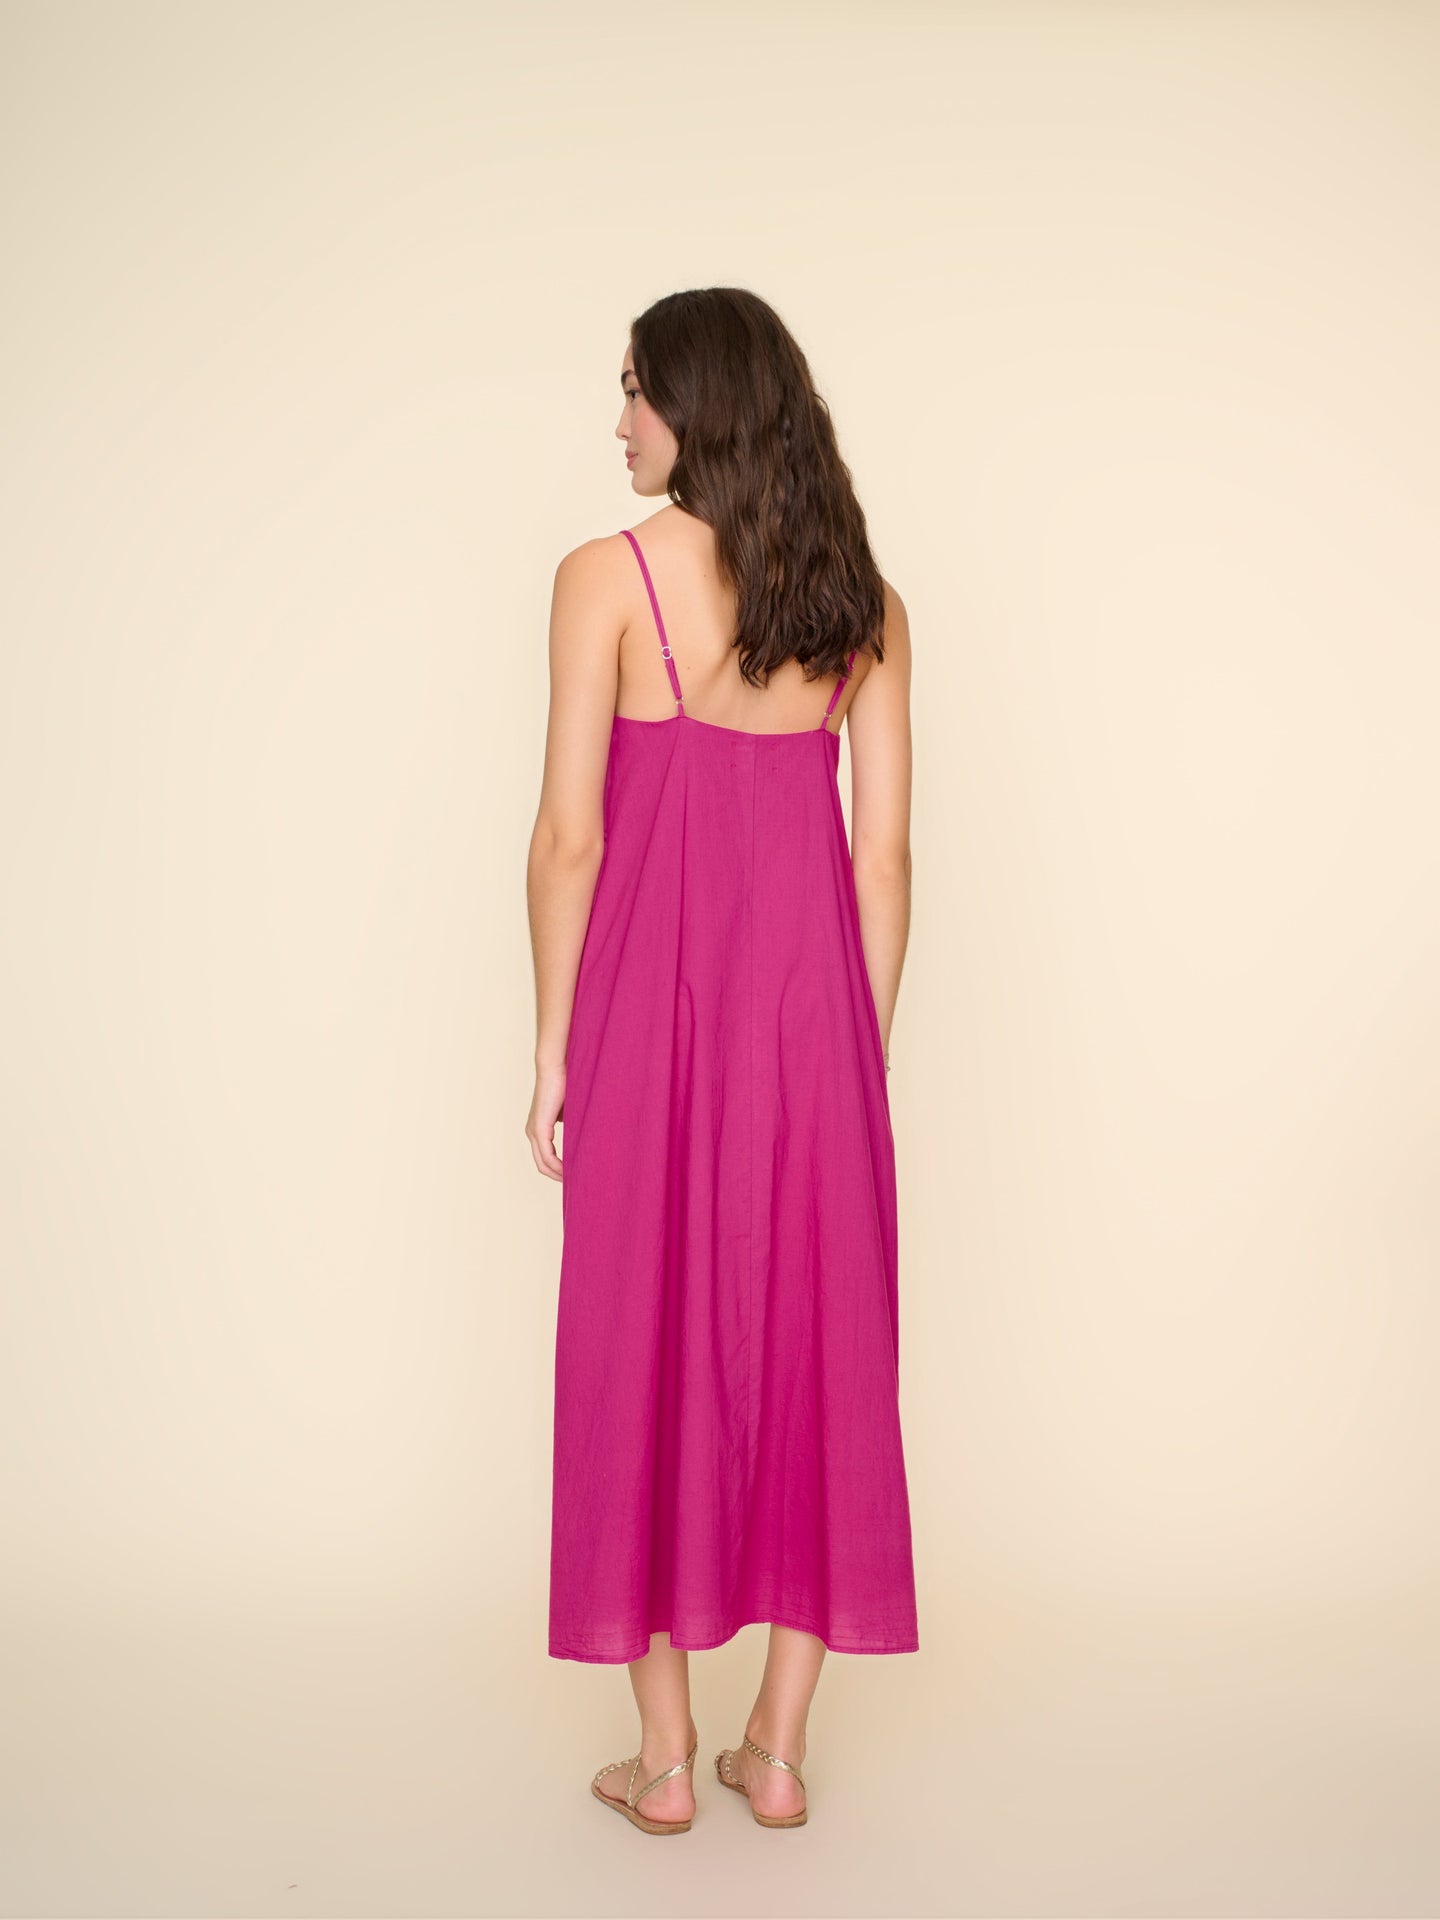 Xirena Dress Pink Plum Teague Dress